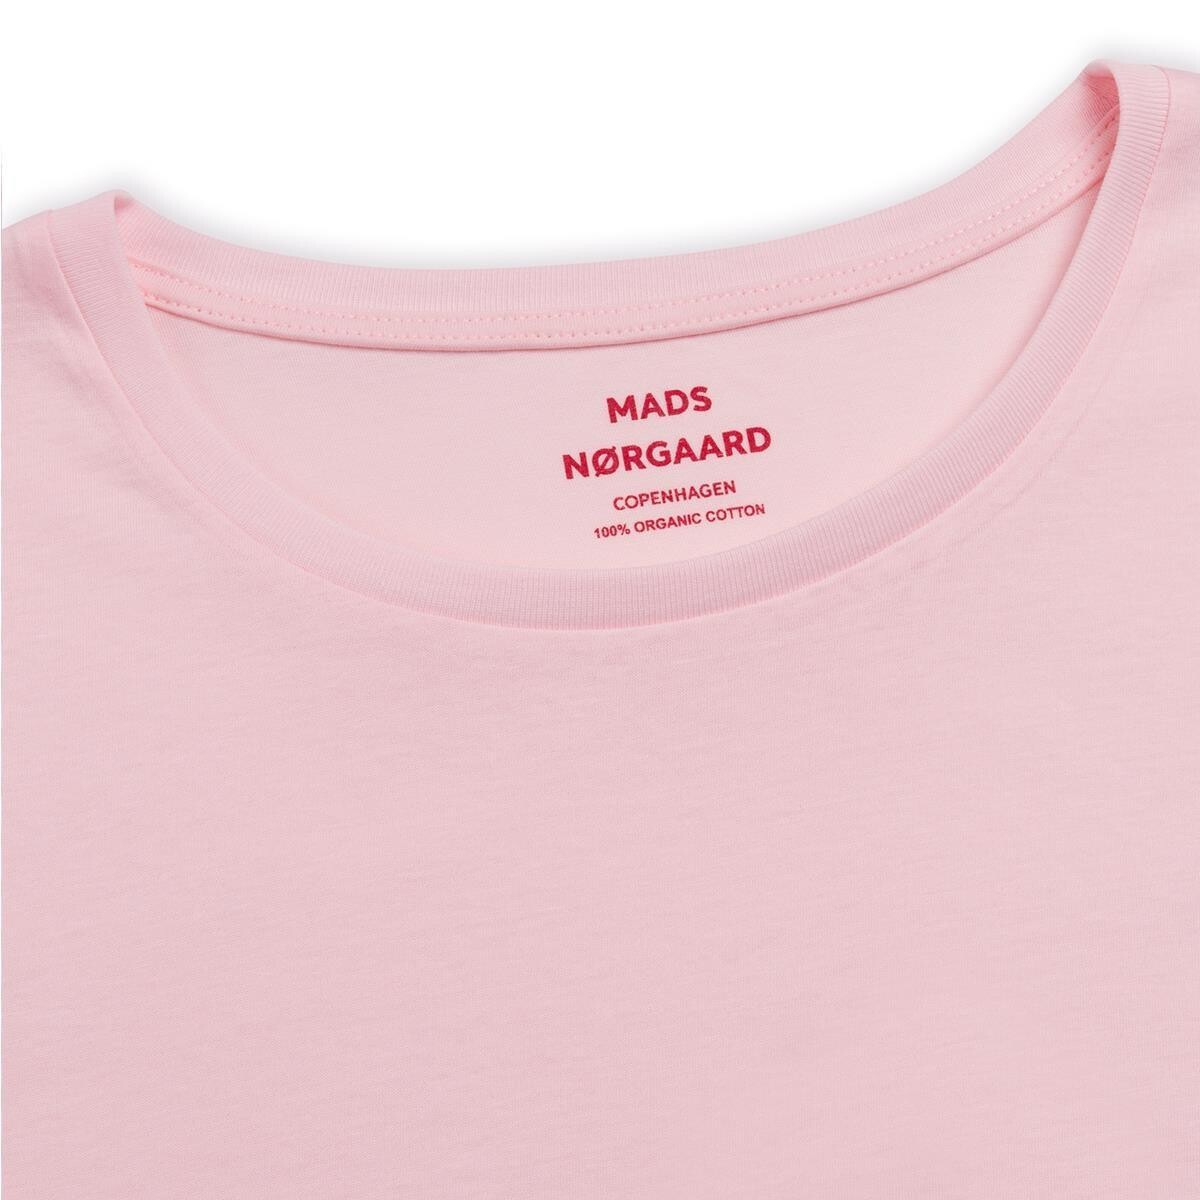 Teasy Organic sart lyserød t-shirt - Mads Nørgaard | Solberg